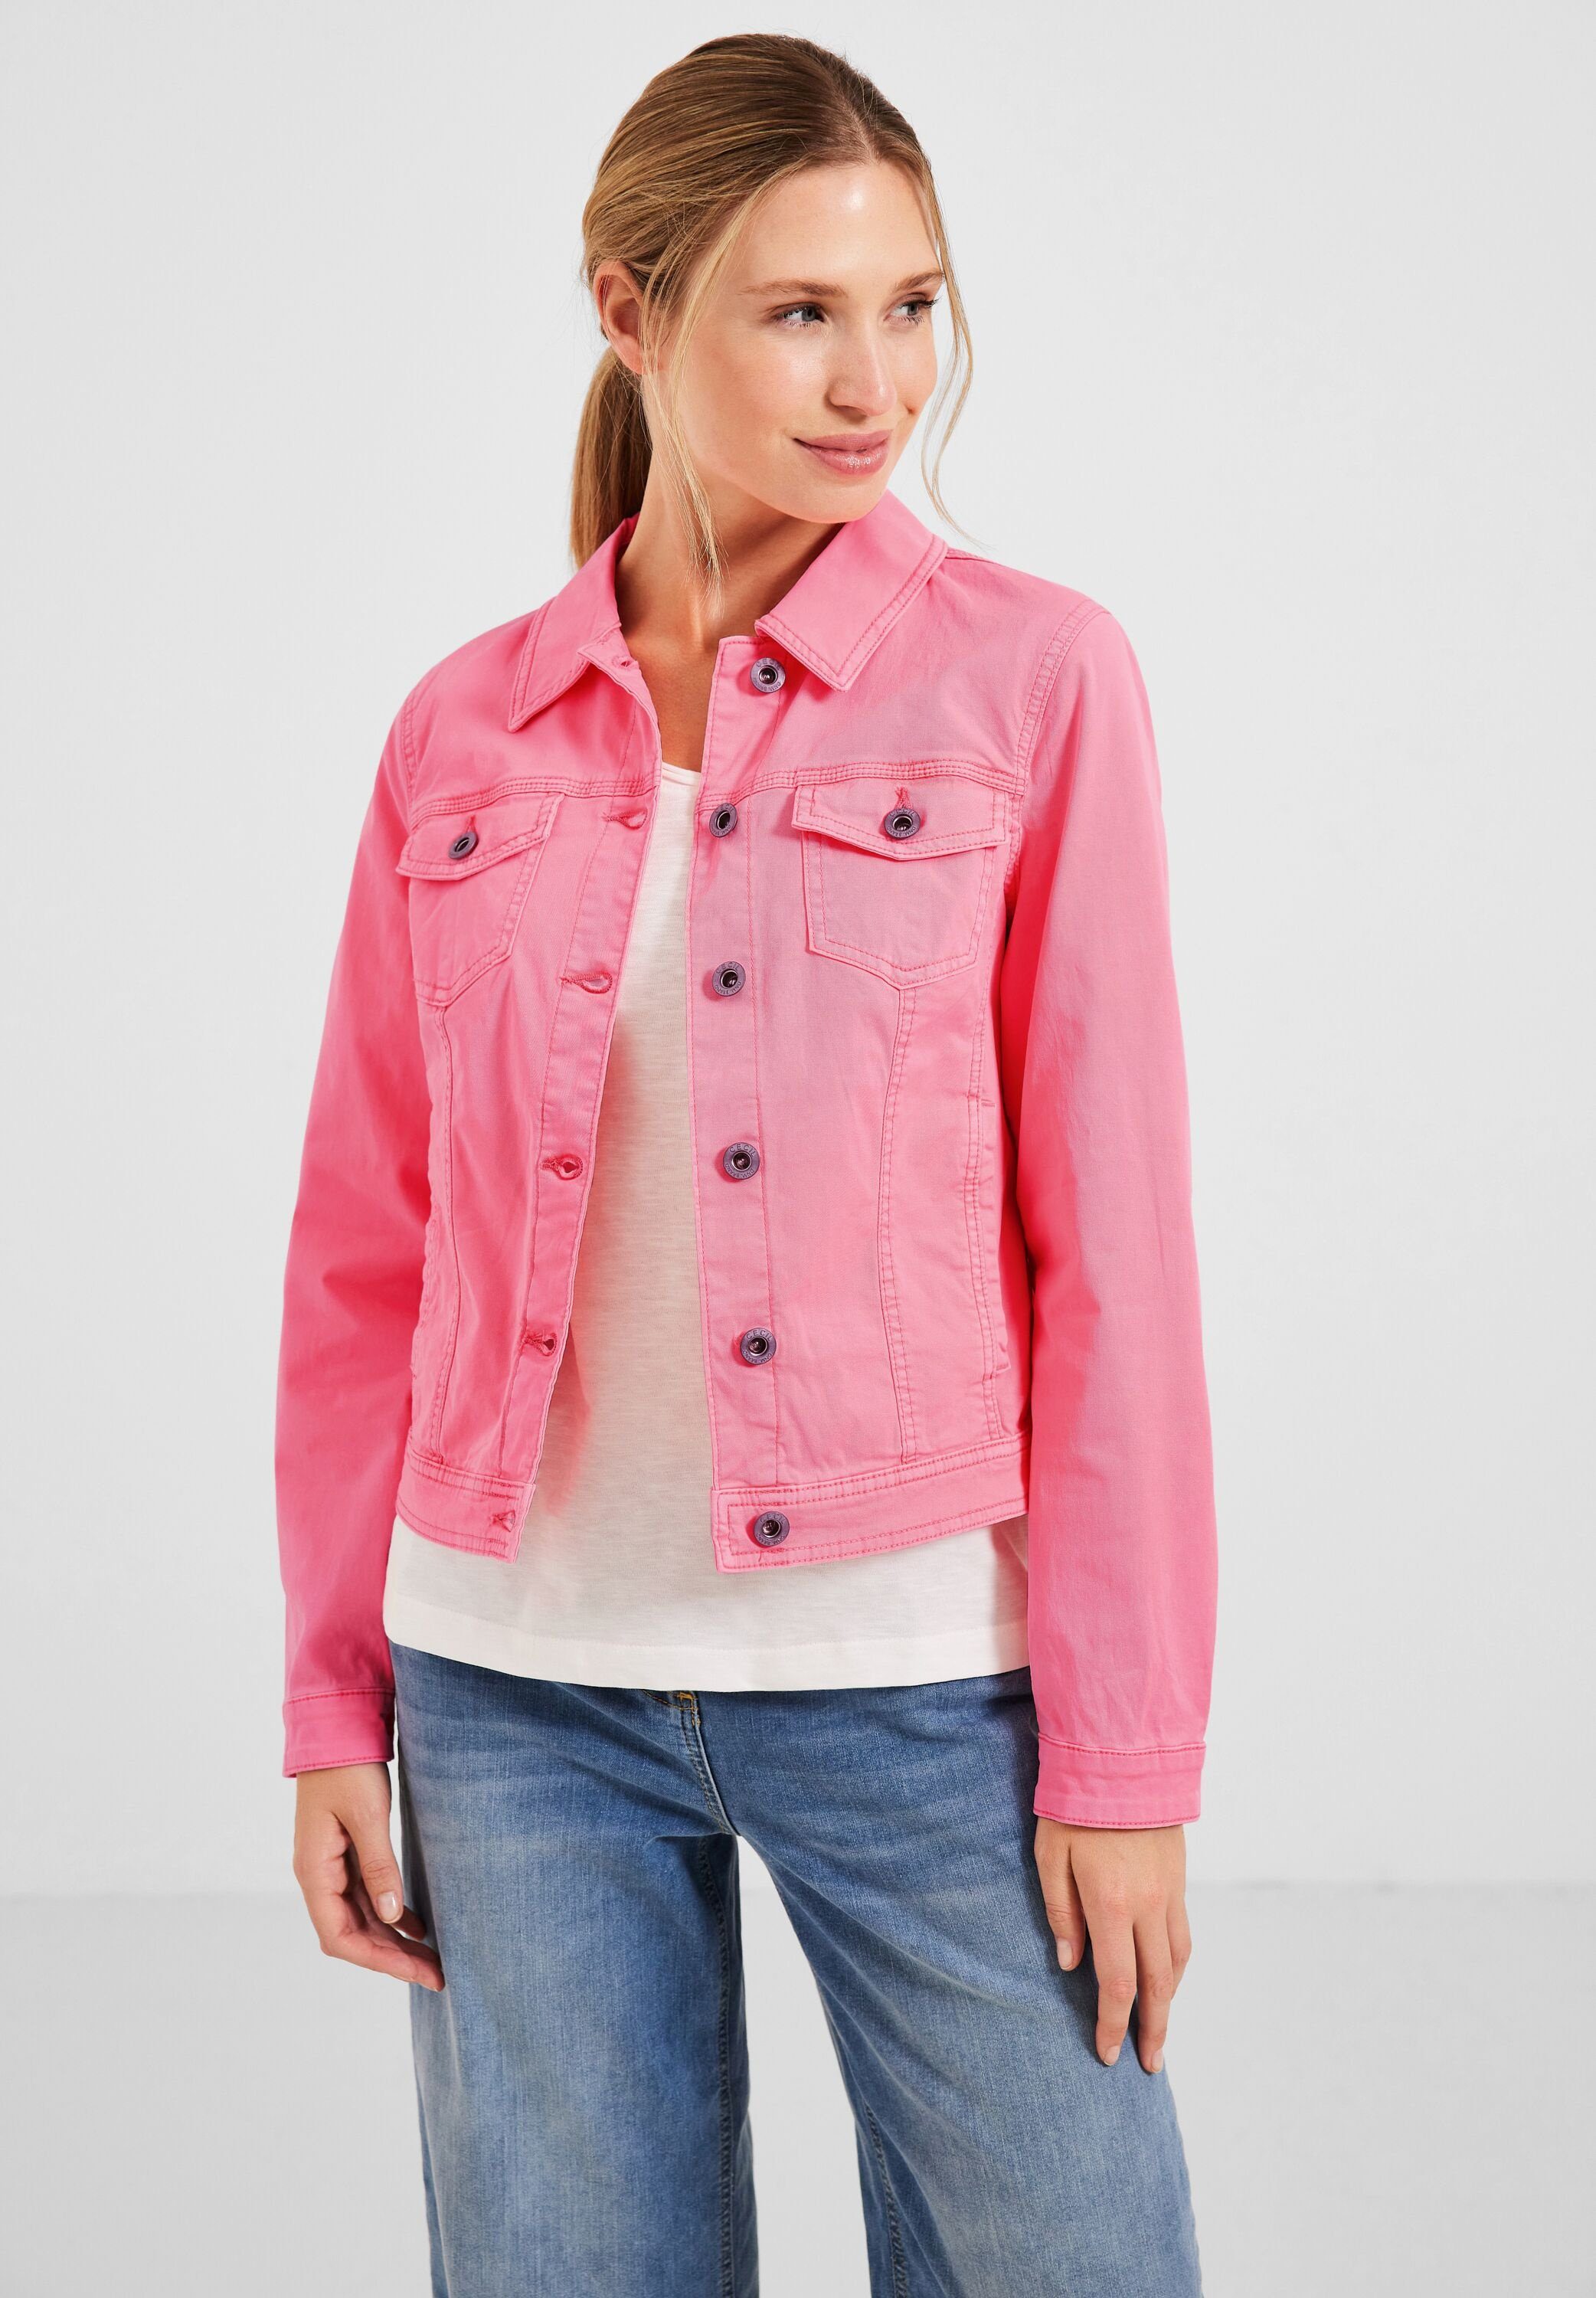 Jeansjacke pink Farbige soft neon Jeansjacke Cecil